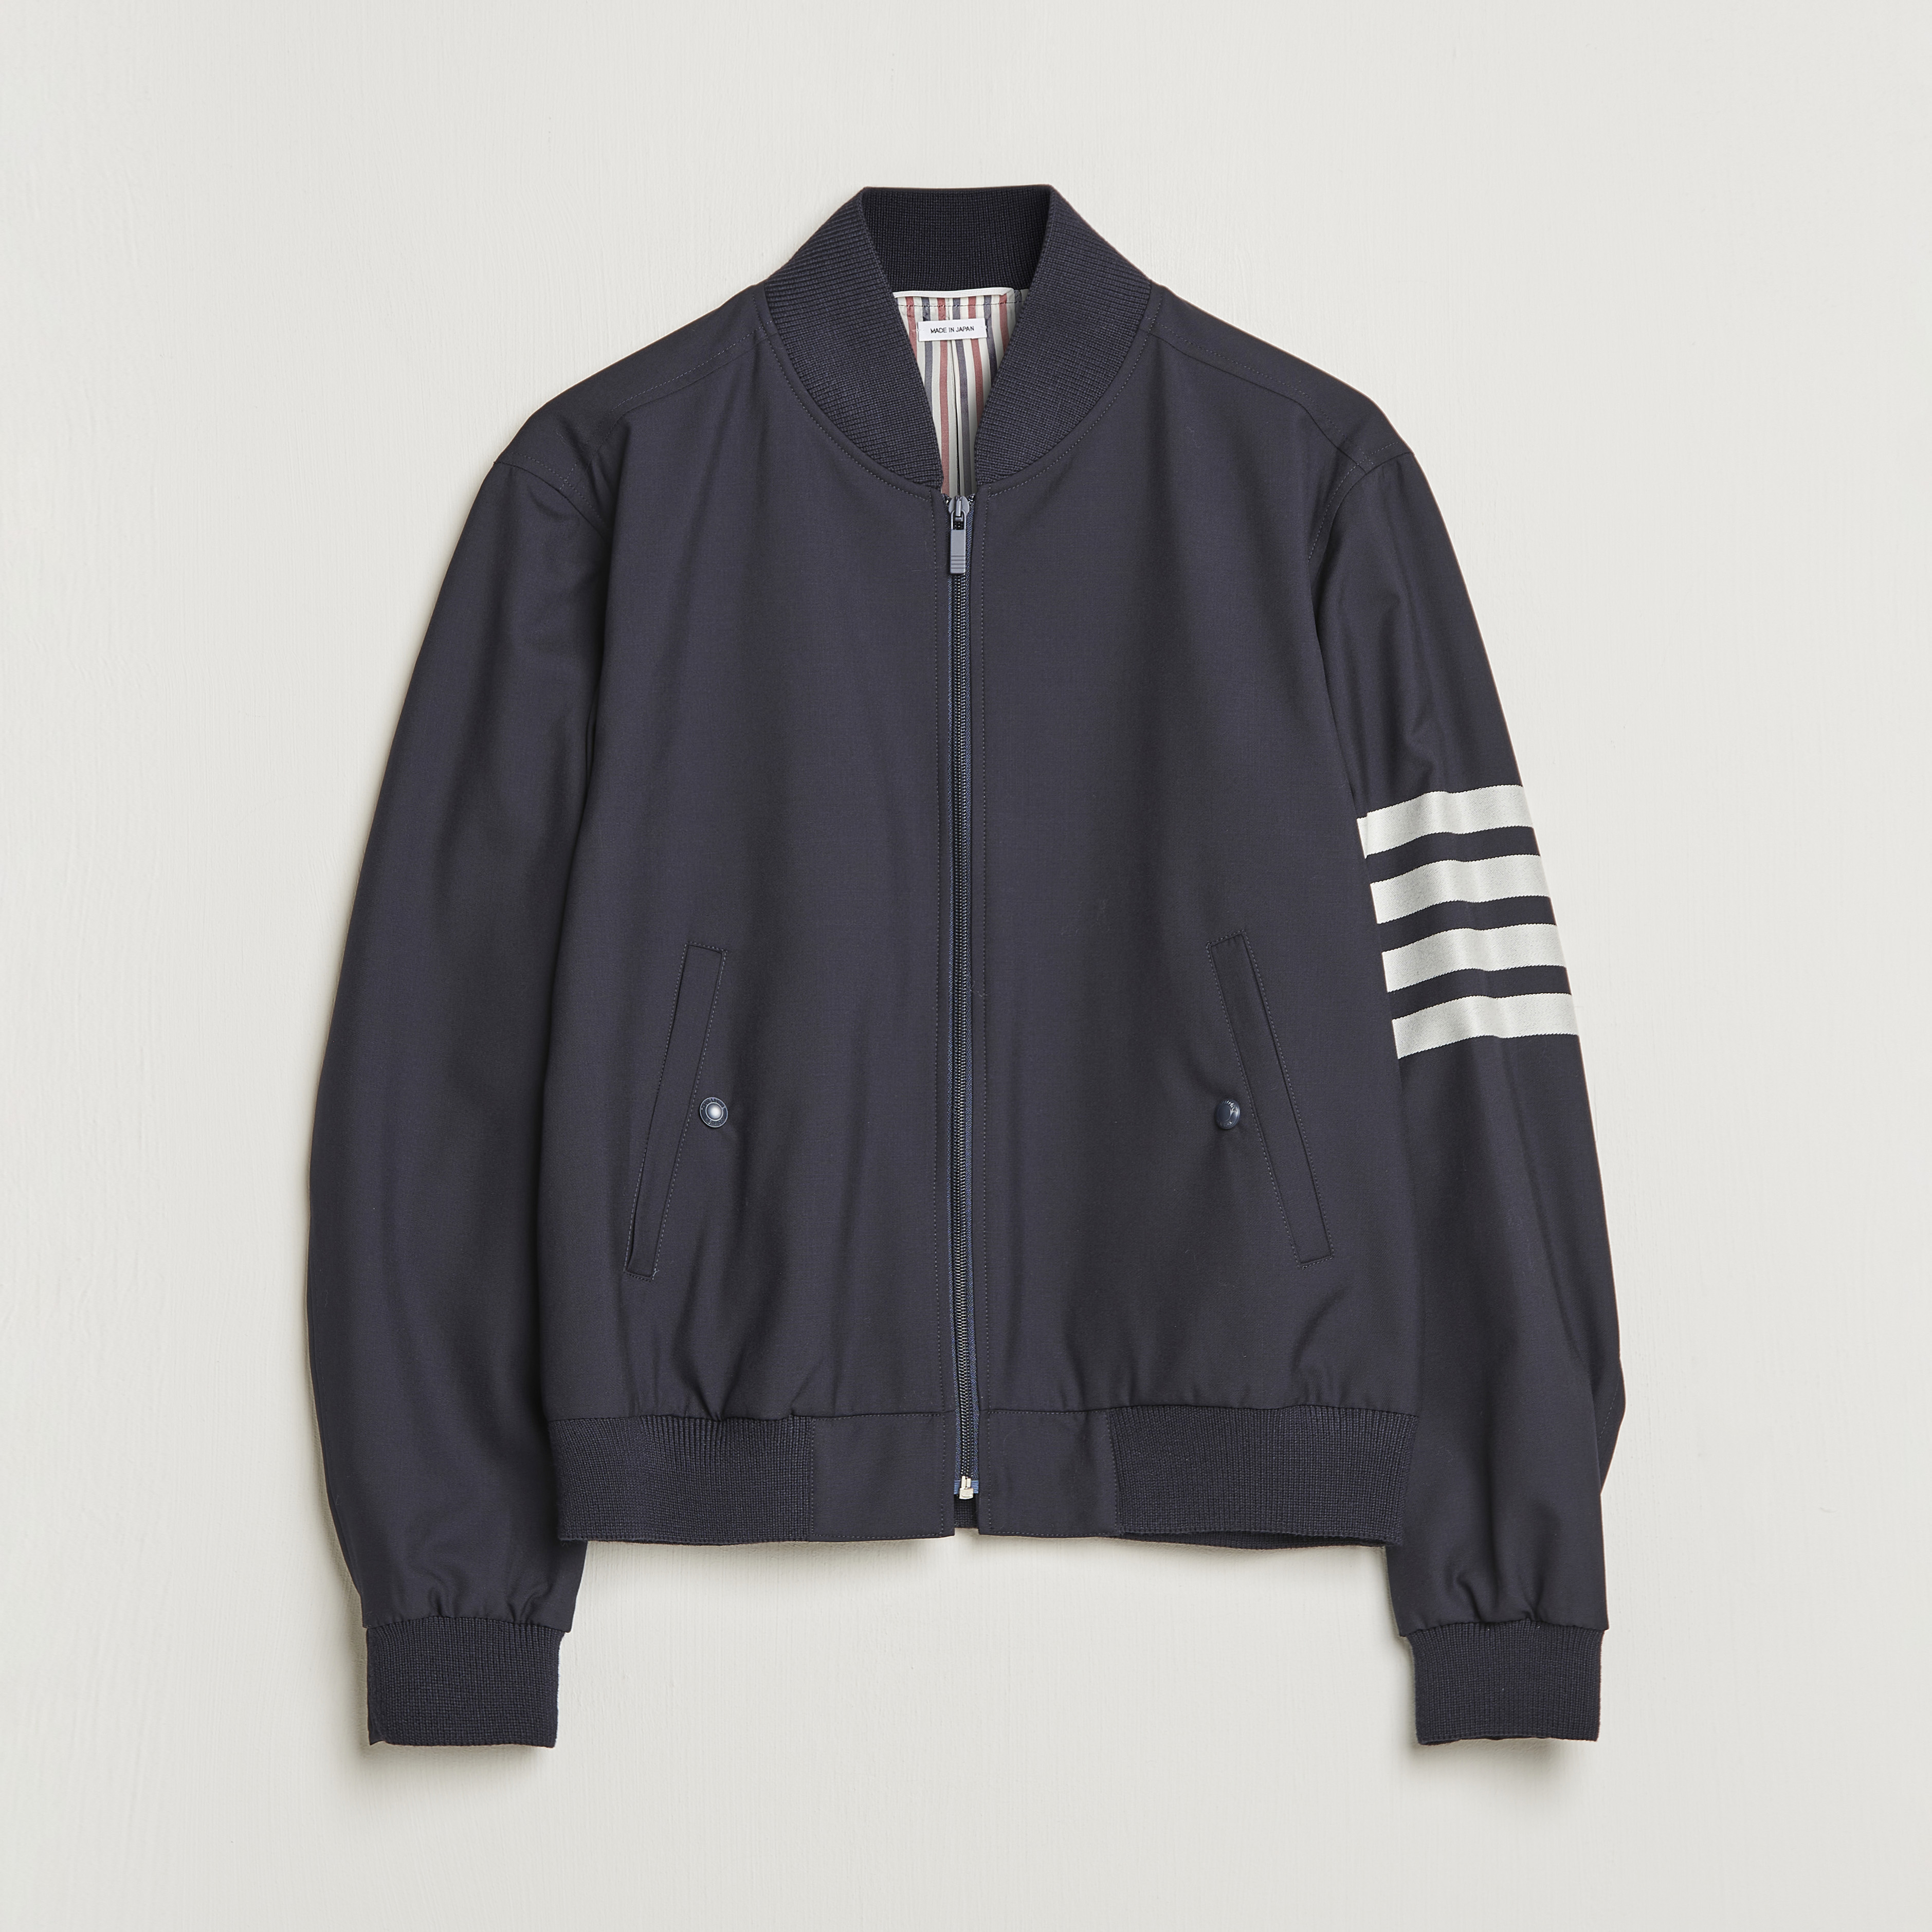 Thom Browne 4 Bar Washed Denim Cutaway Jacket, $1,428